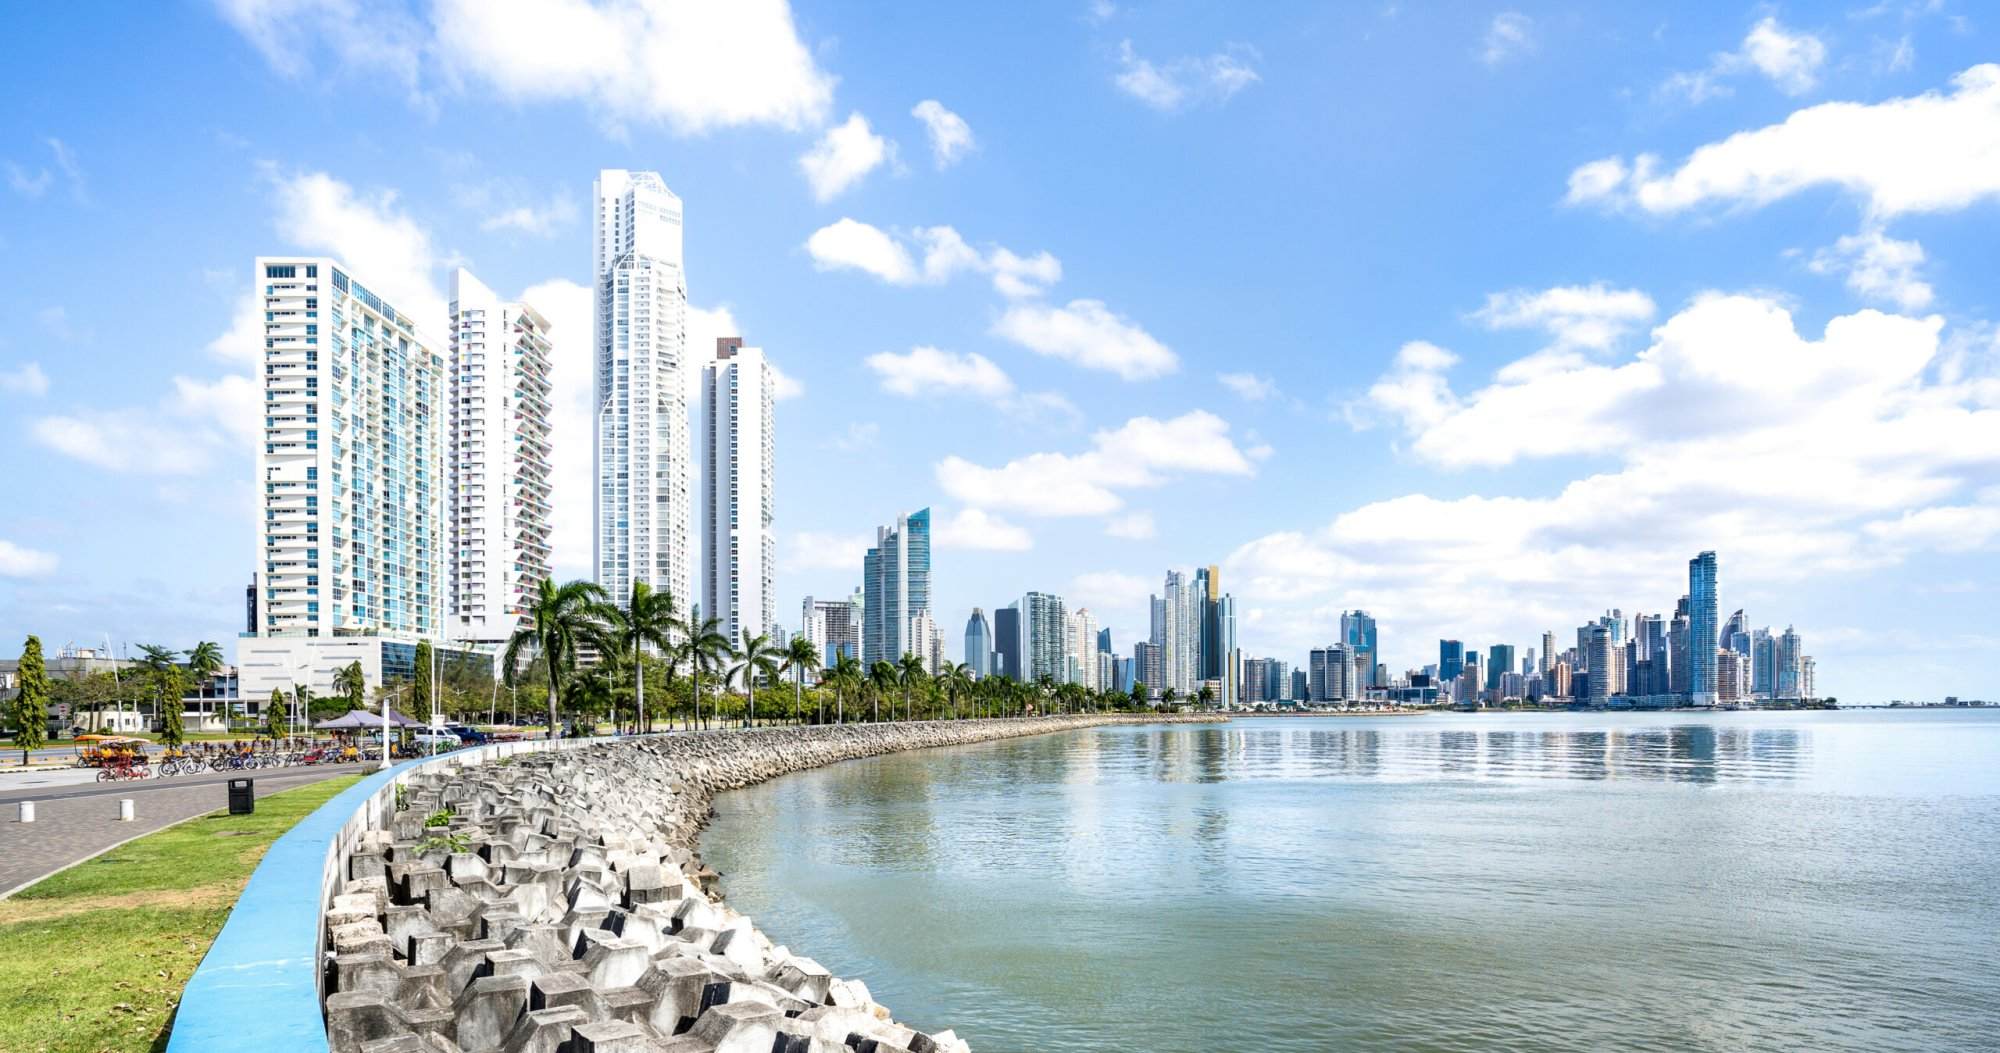 Panorama view of skyline of Panama City